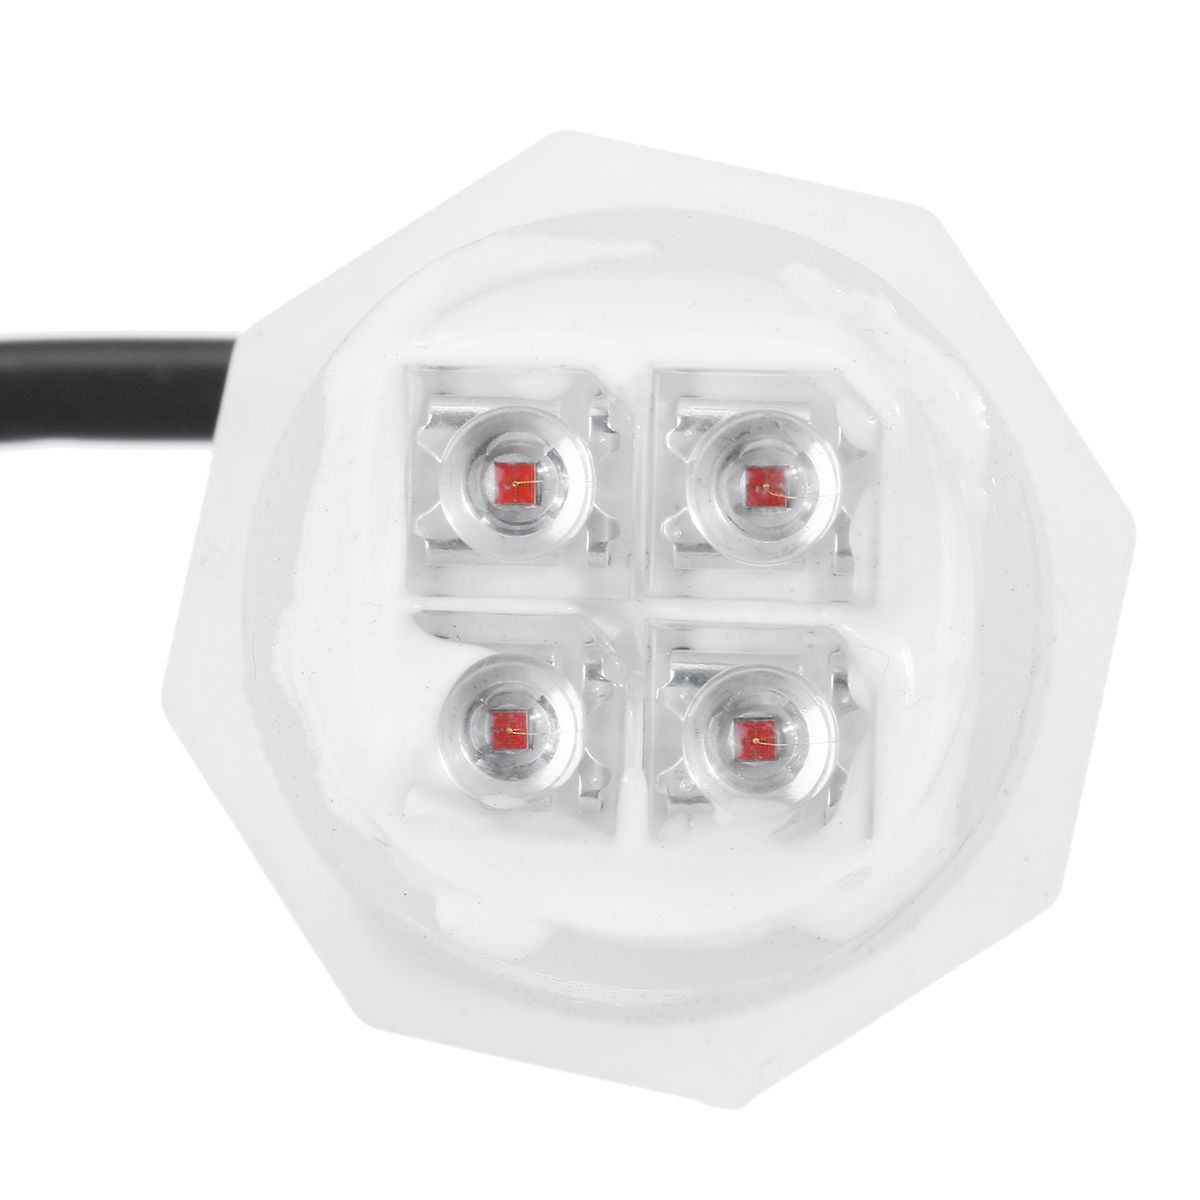 8-LED-Bulbs-Car-Emergency-Warning-Strobe-Light-Kit-160W-12V-Amber-White-Bulbs-Universal-1629001